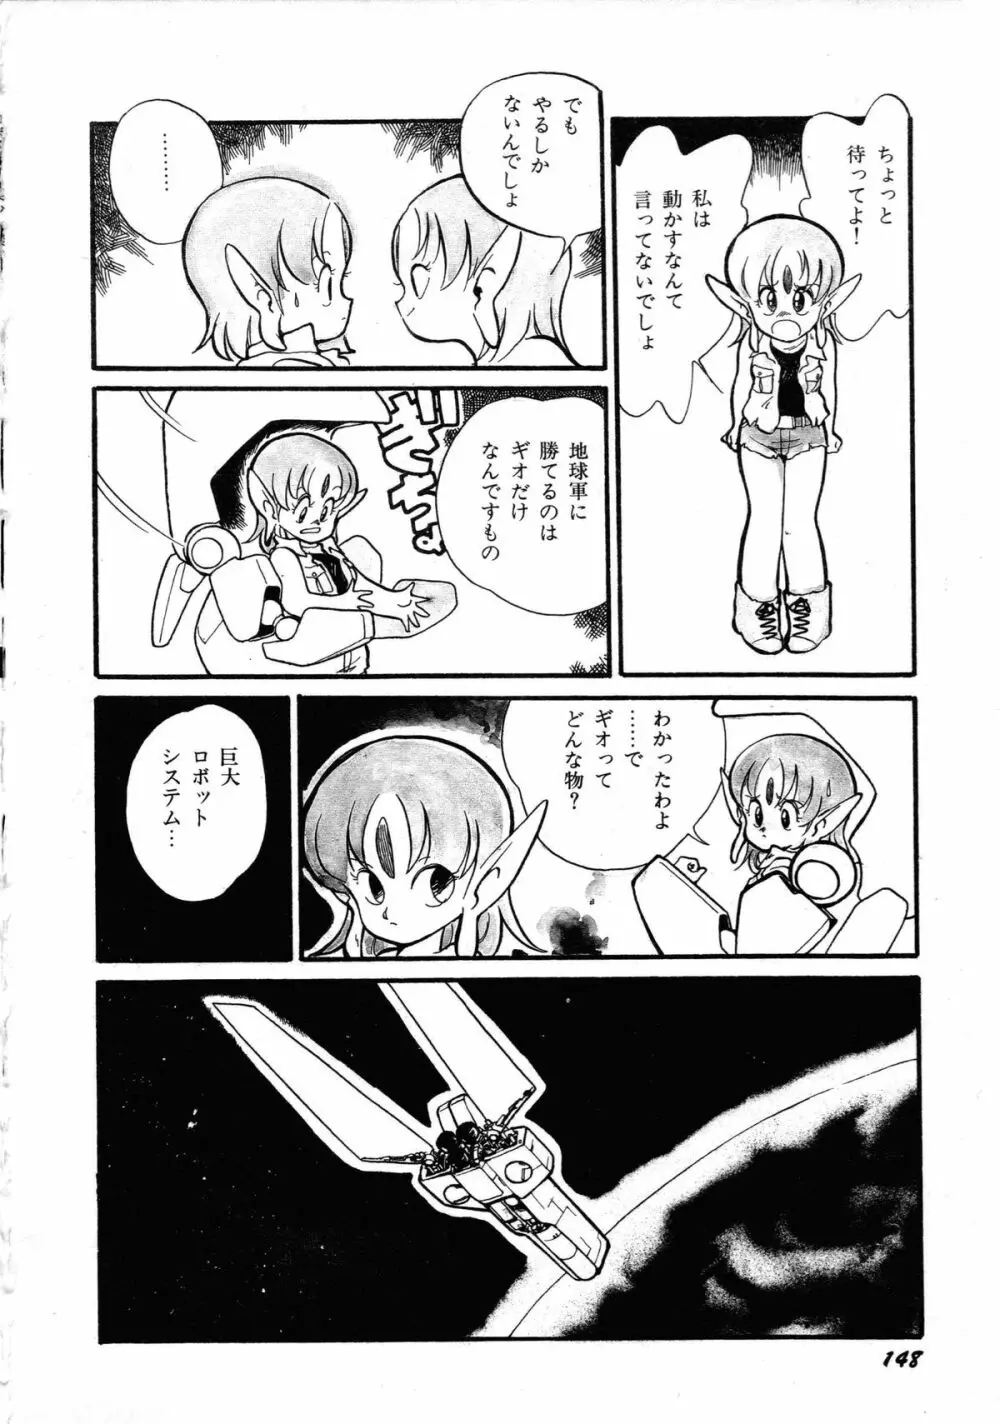 ロボット&美少女傑作選 レモン・ピープル1982-1986 152ページ